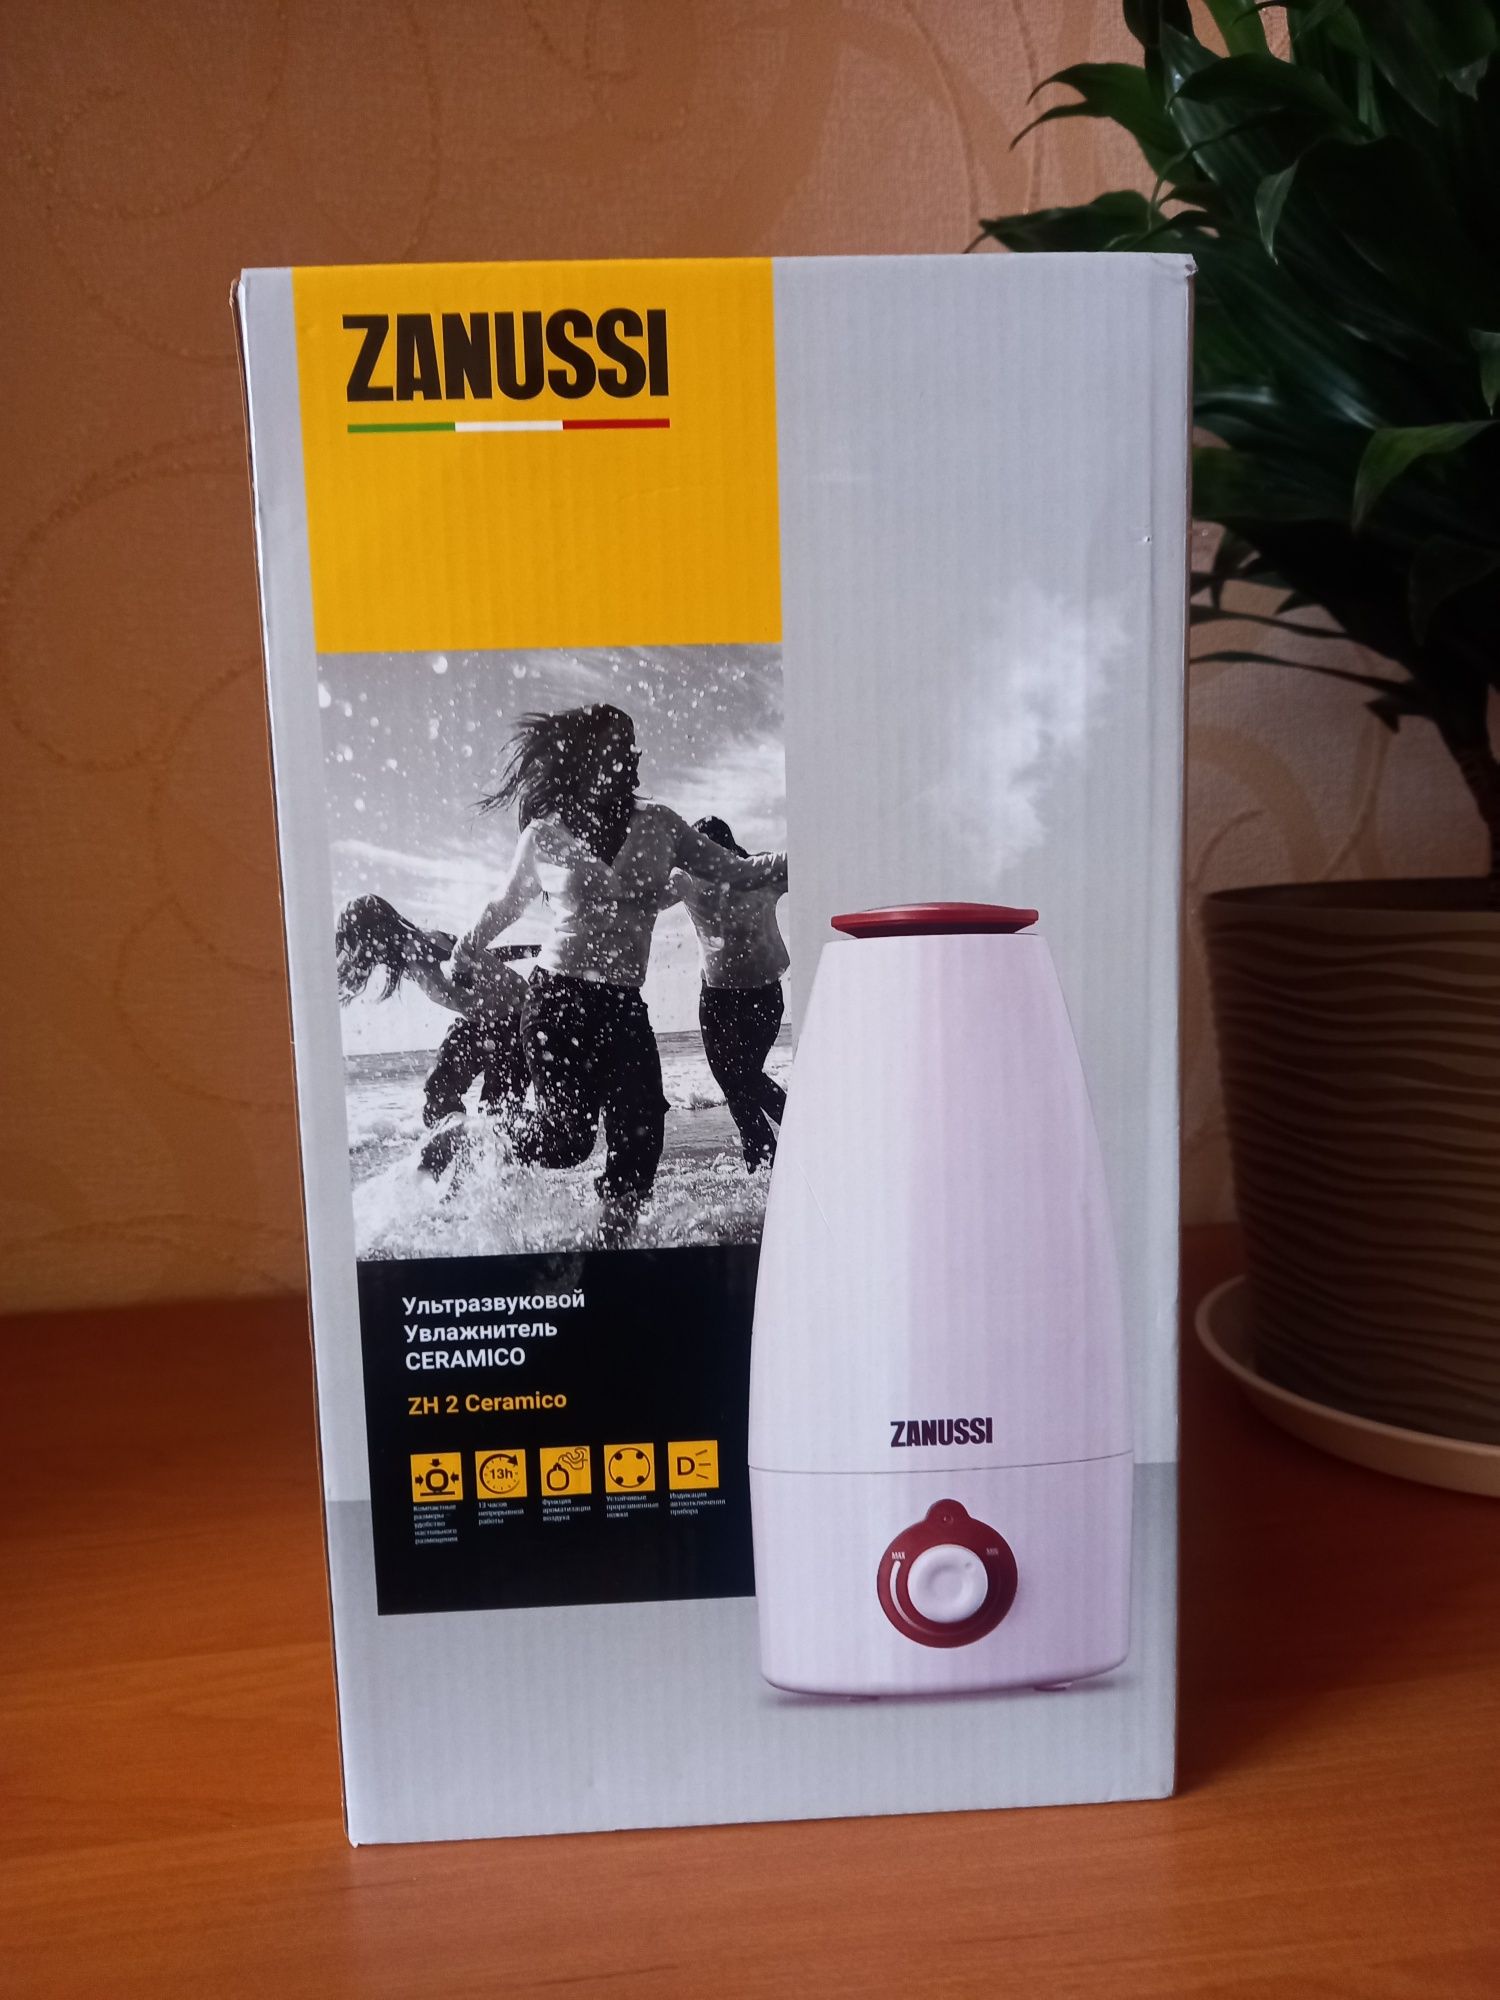 Увлажните ультразвуковой Zanussi ceramico ZH 2.